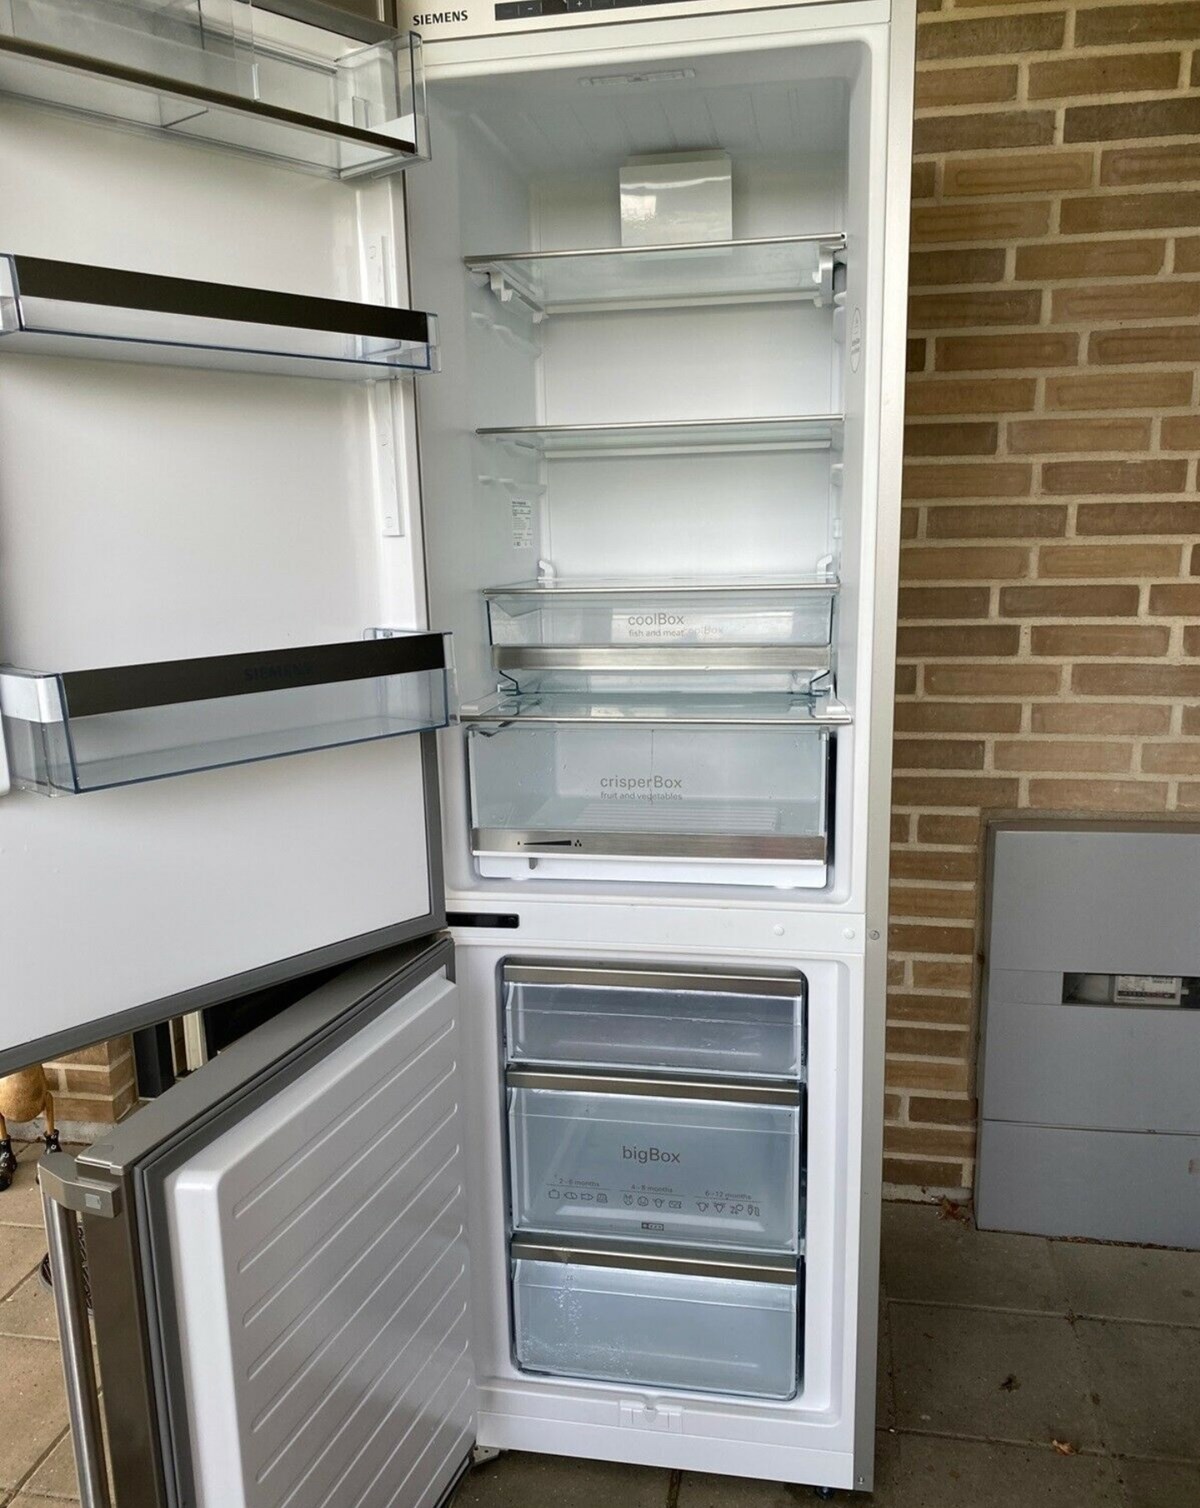 Dette køleskab fra Siemens, energiklasse A+++ kan lige nu blive dit gennem DBA. Køleskabet står i Horsens hos Oxana, som har det til salg for 1.200 kroner.